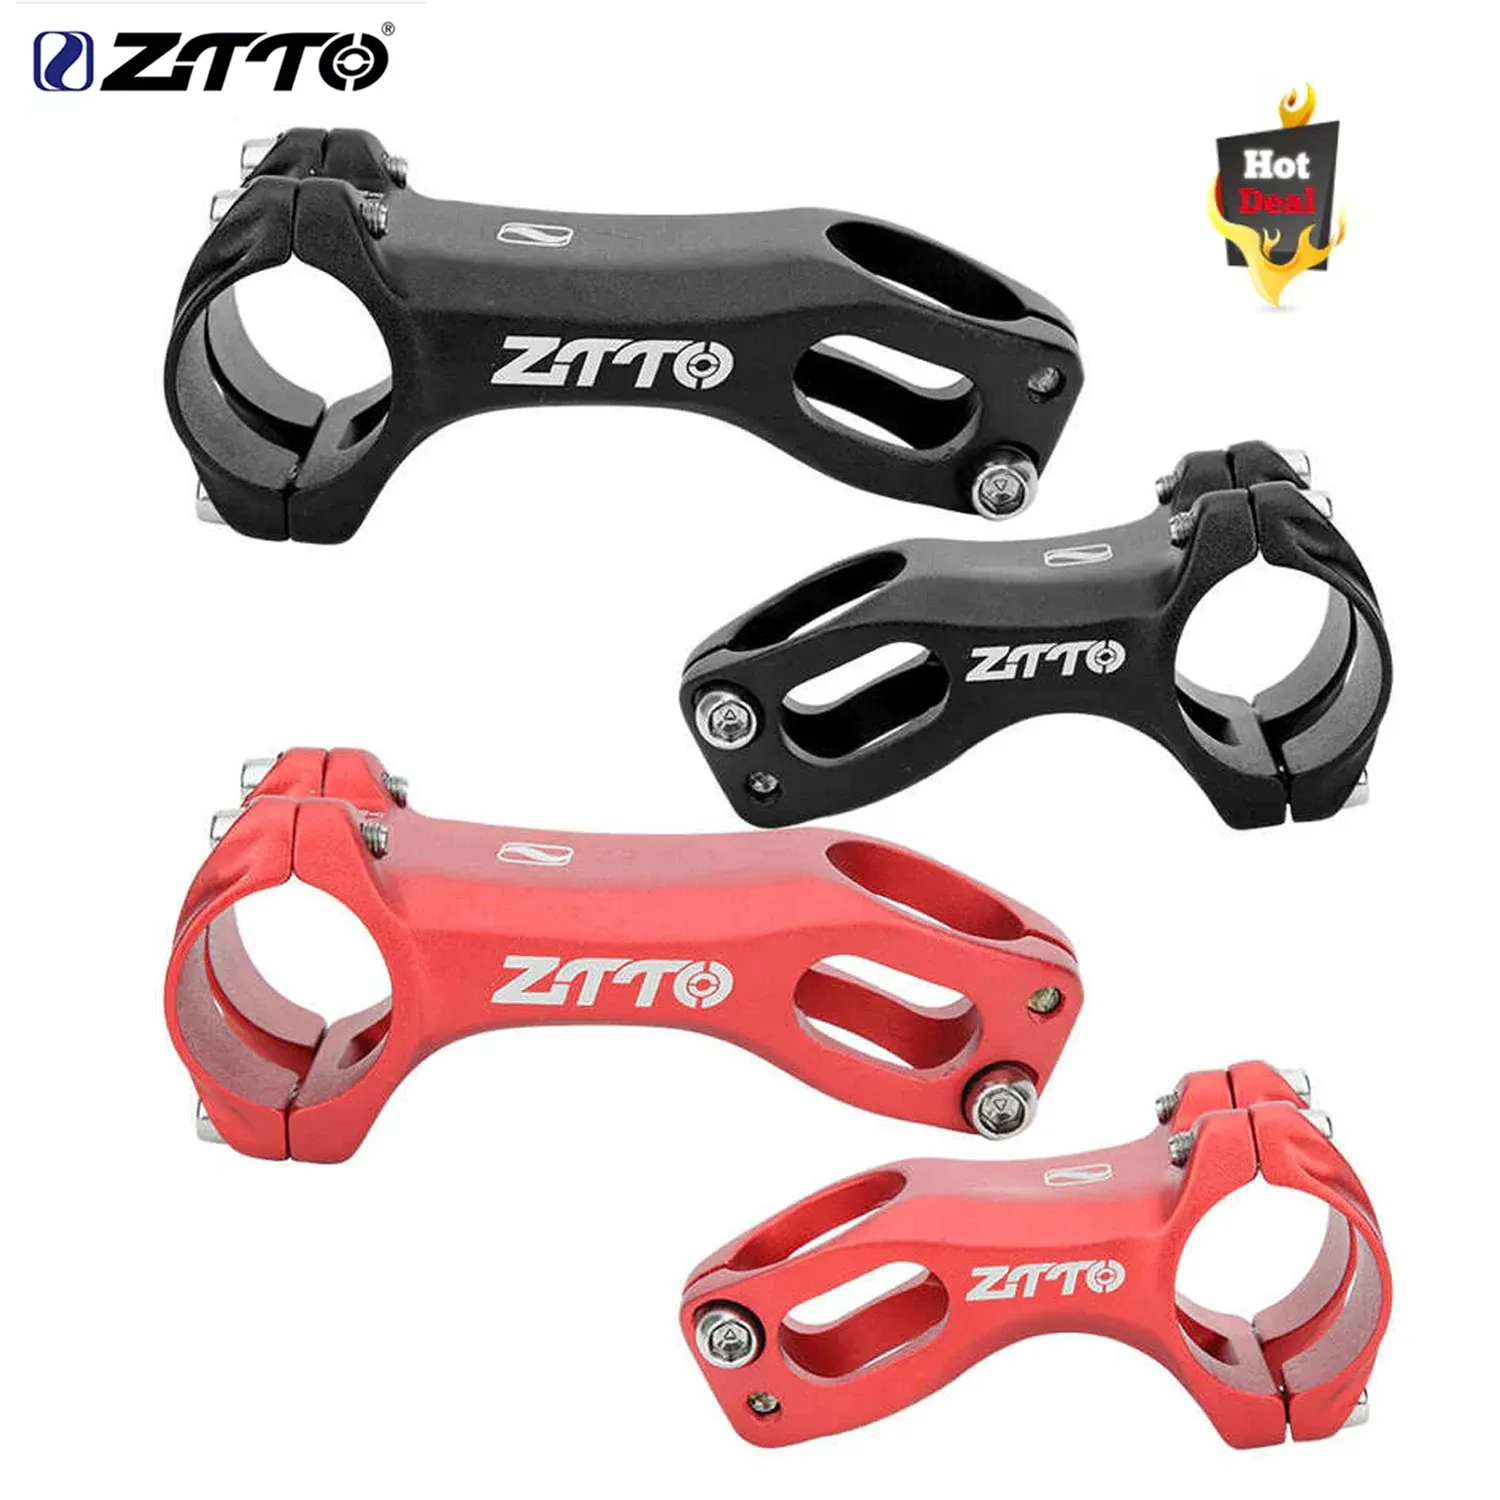 ZTTO MTB bisiklet gidon sapı xc hava ile çalışan negatif açı gövdesi 31.8x60/80mmultralight bisiklet bisikleti kök bisiklet bisiklet parçaları